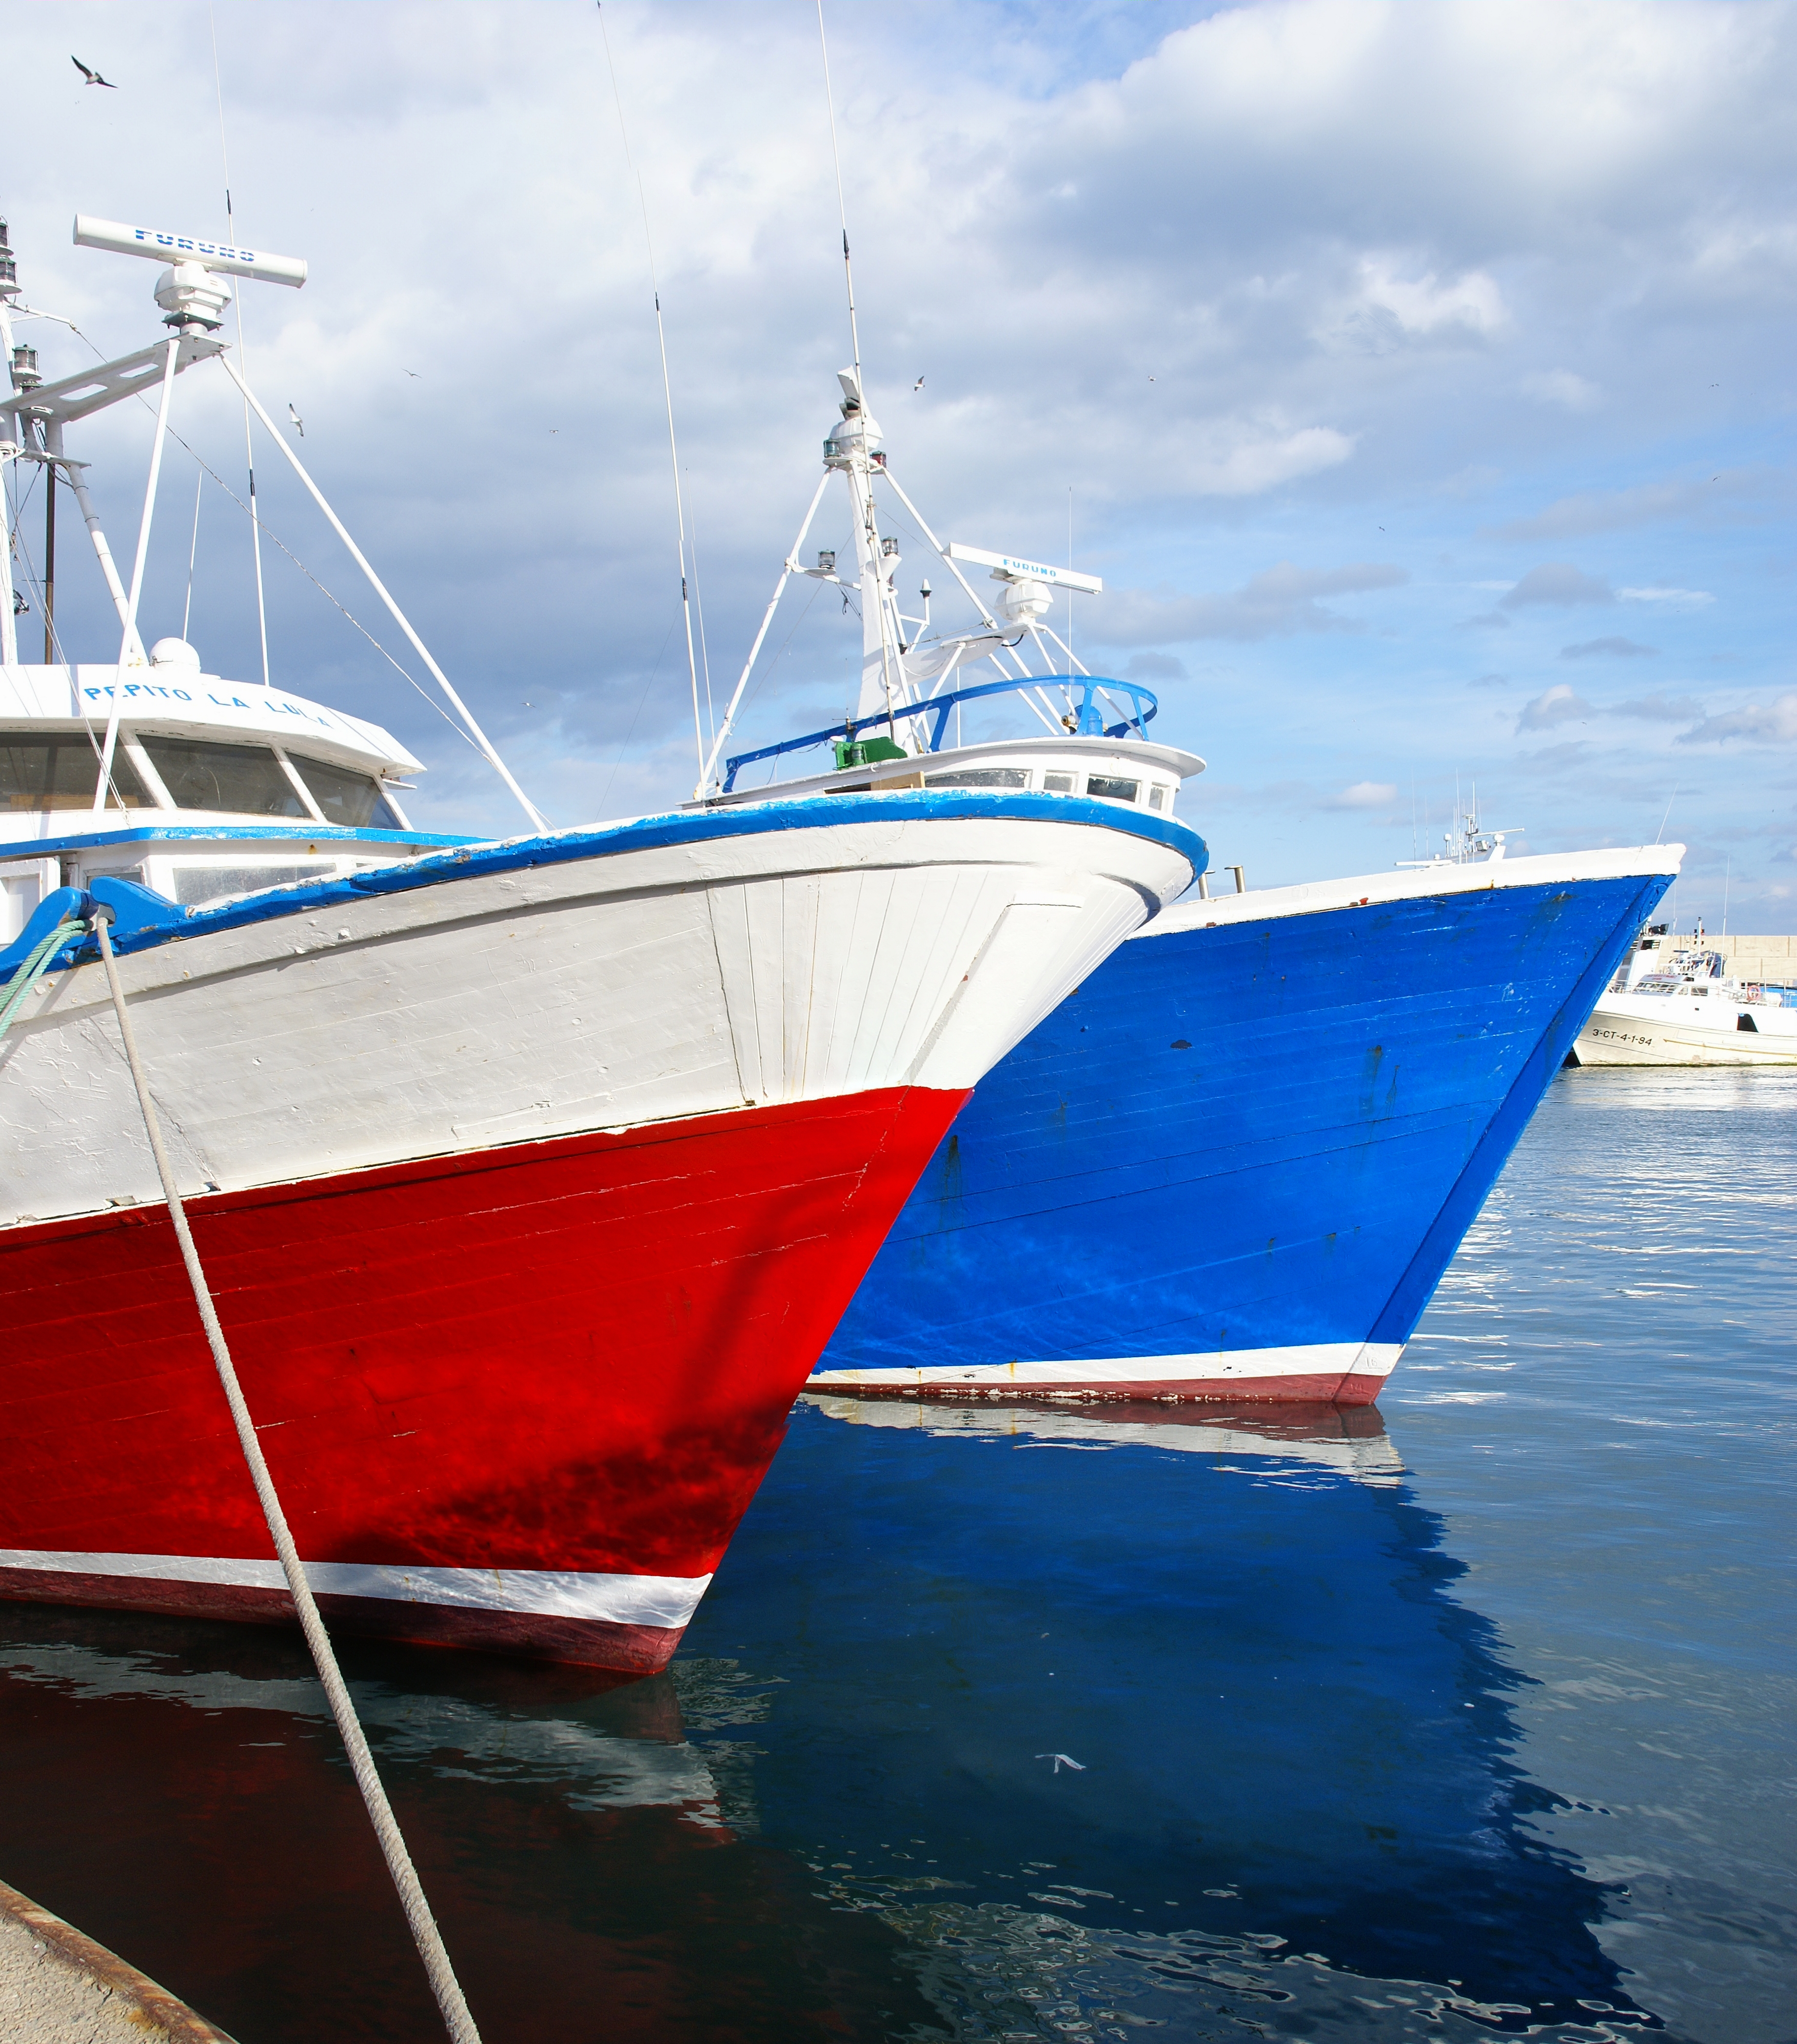 L'Ametlla de Mar - Fishing boats